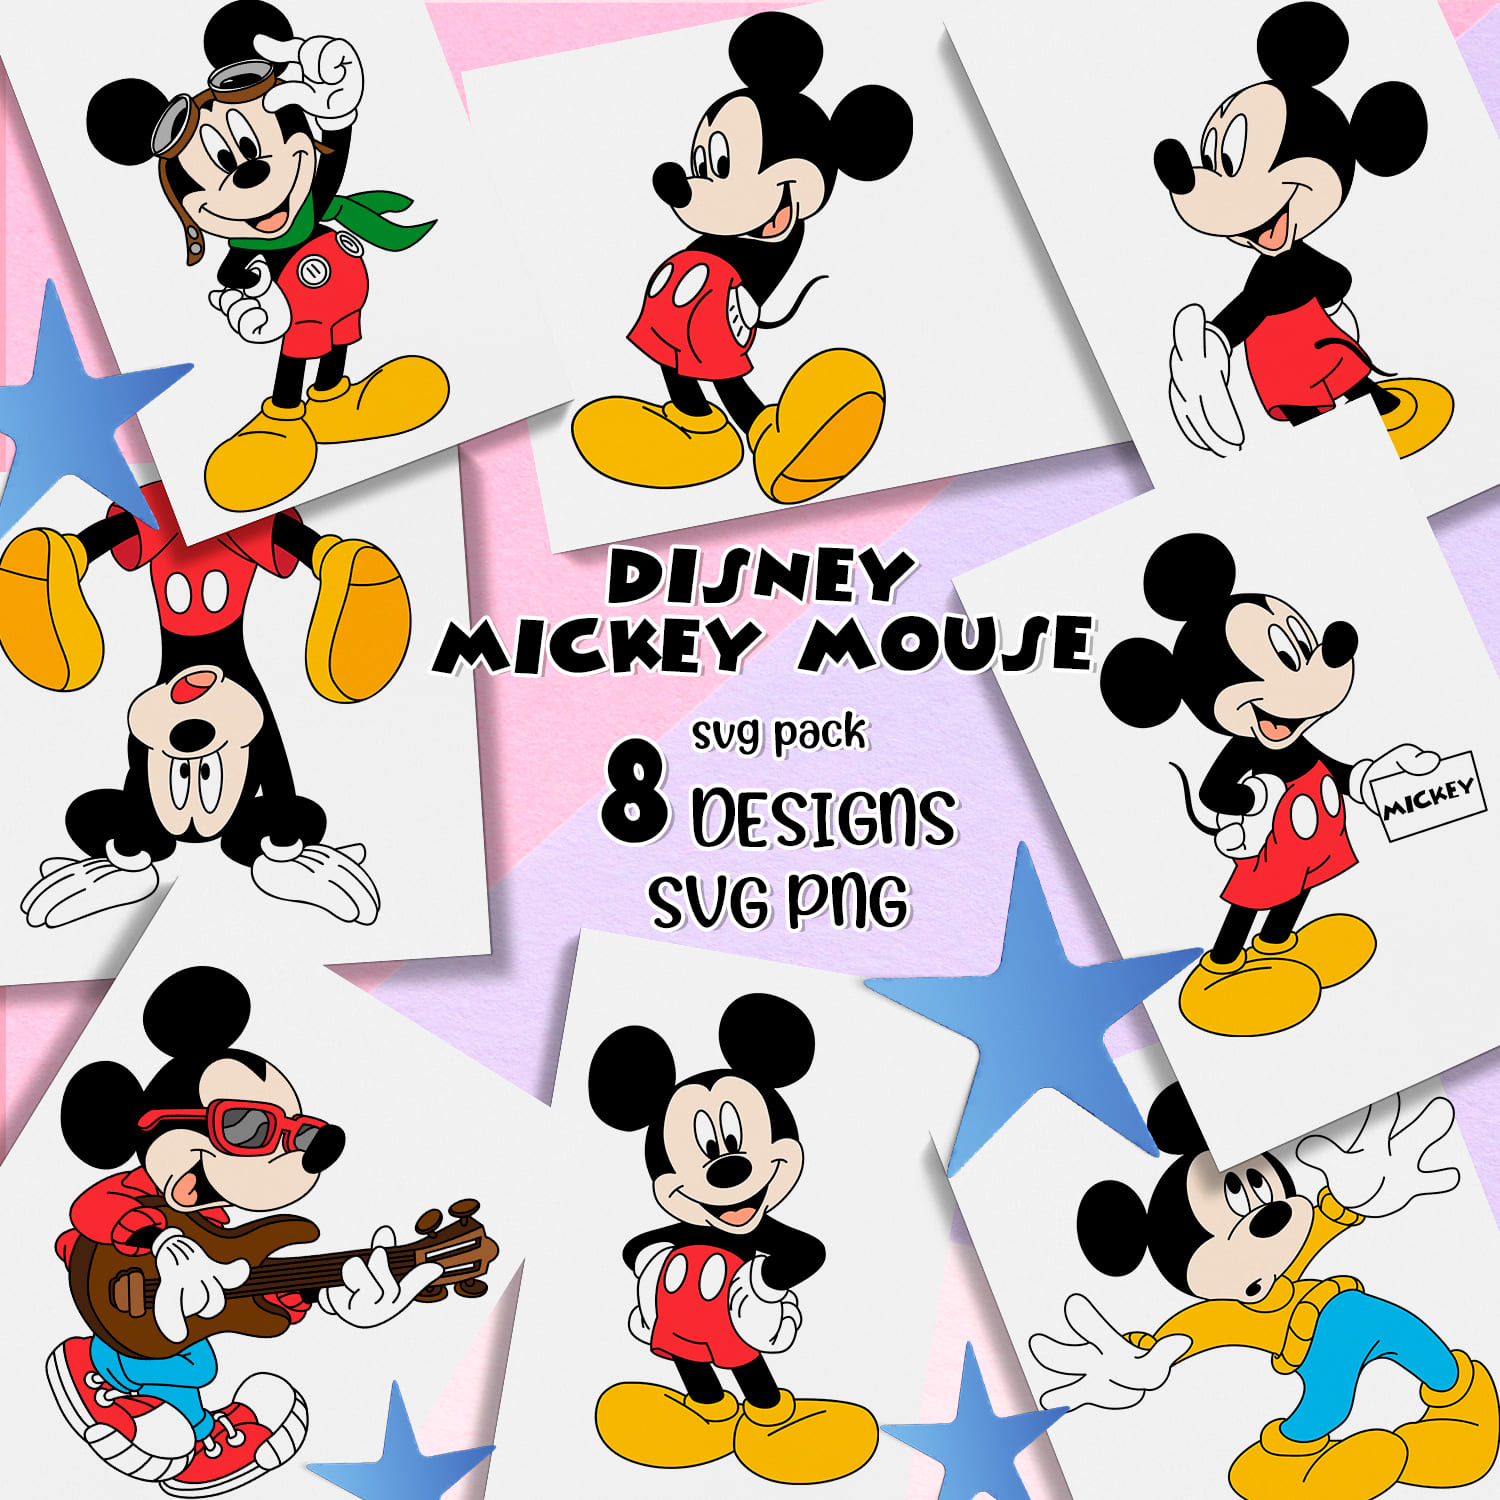 Disney Mickey Mouse Svg.